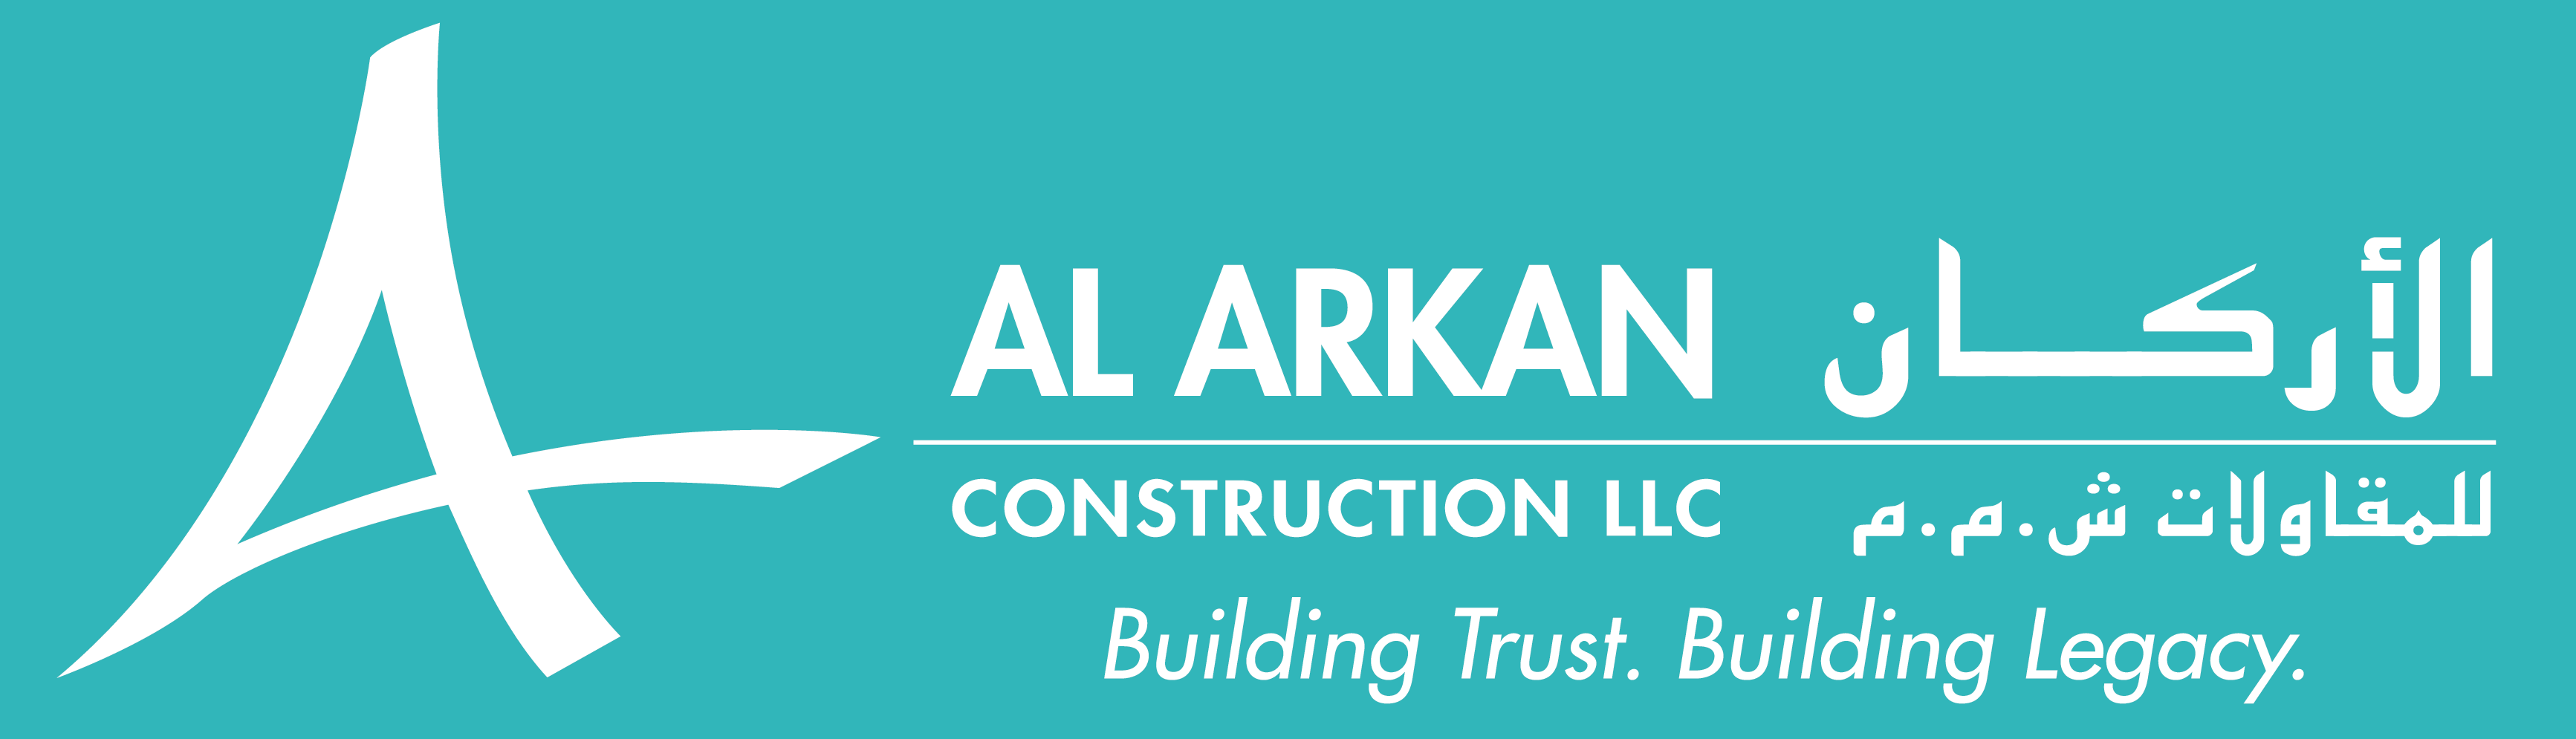 Al Arkan Construction LLC